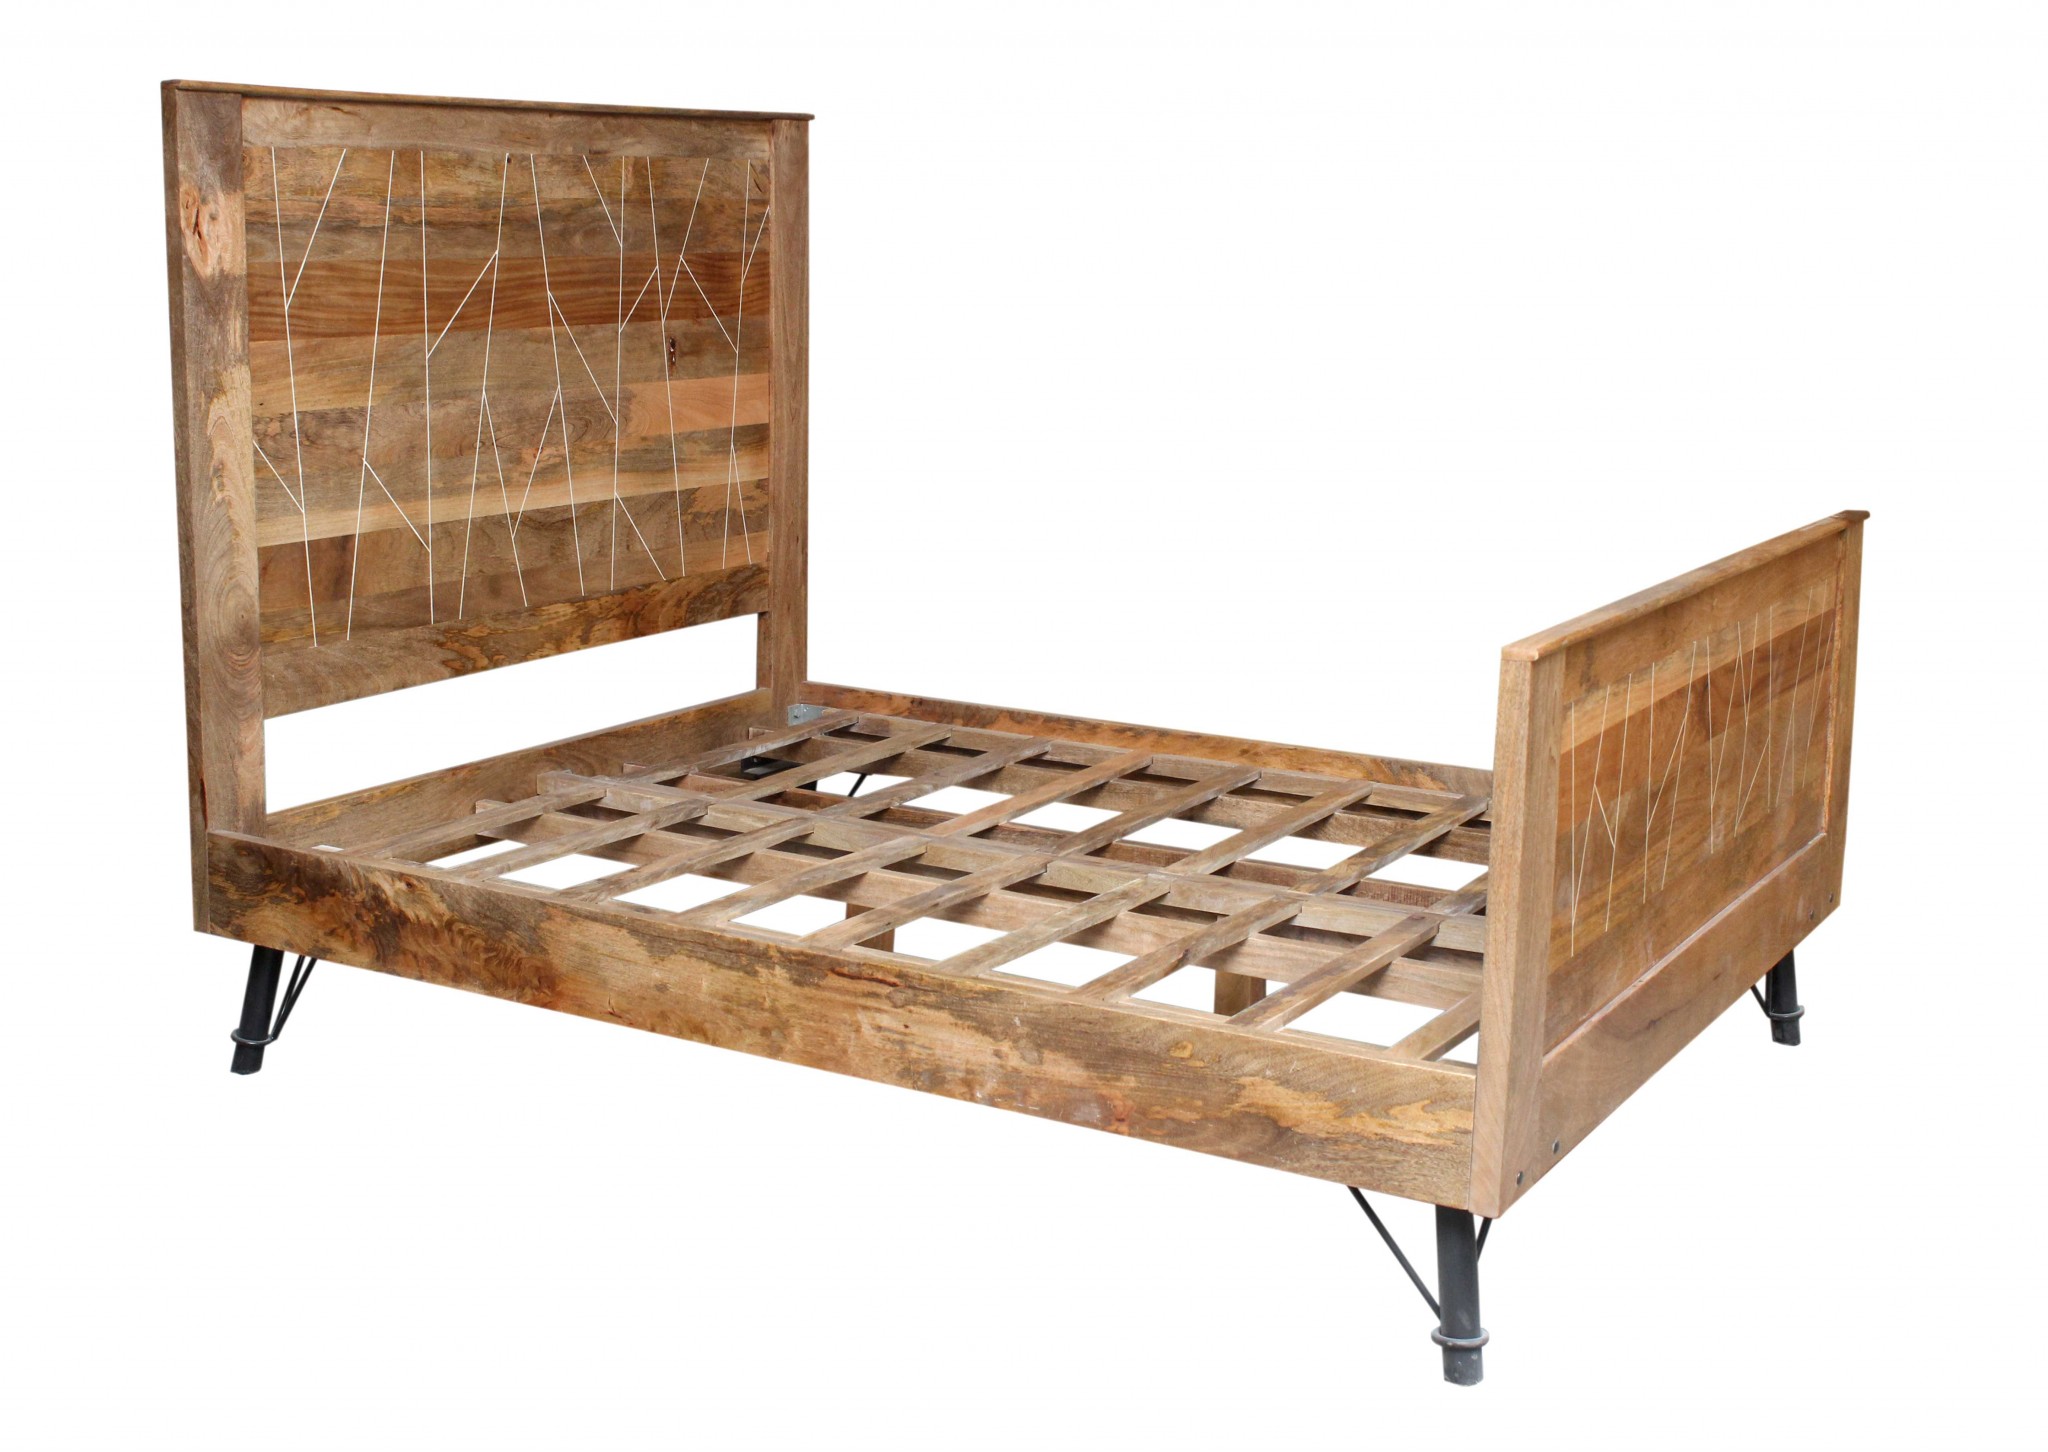 60" X 80" X 61" Natural Tones Mango Wood Queen Size Bed